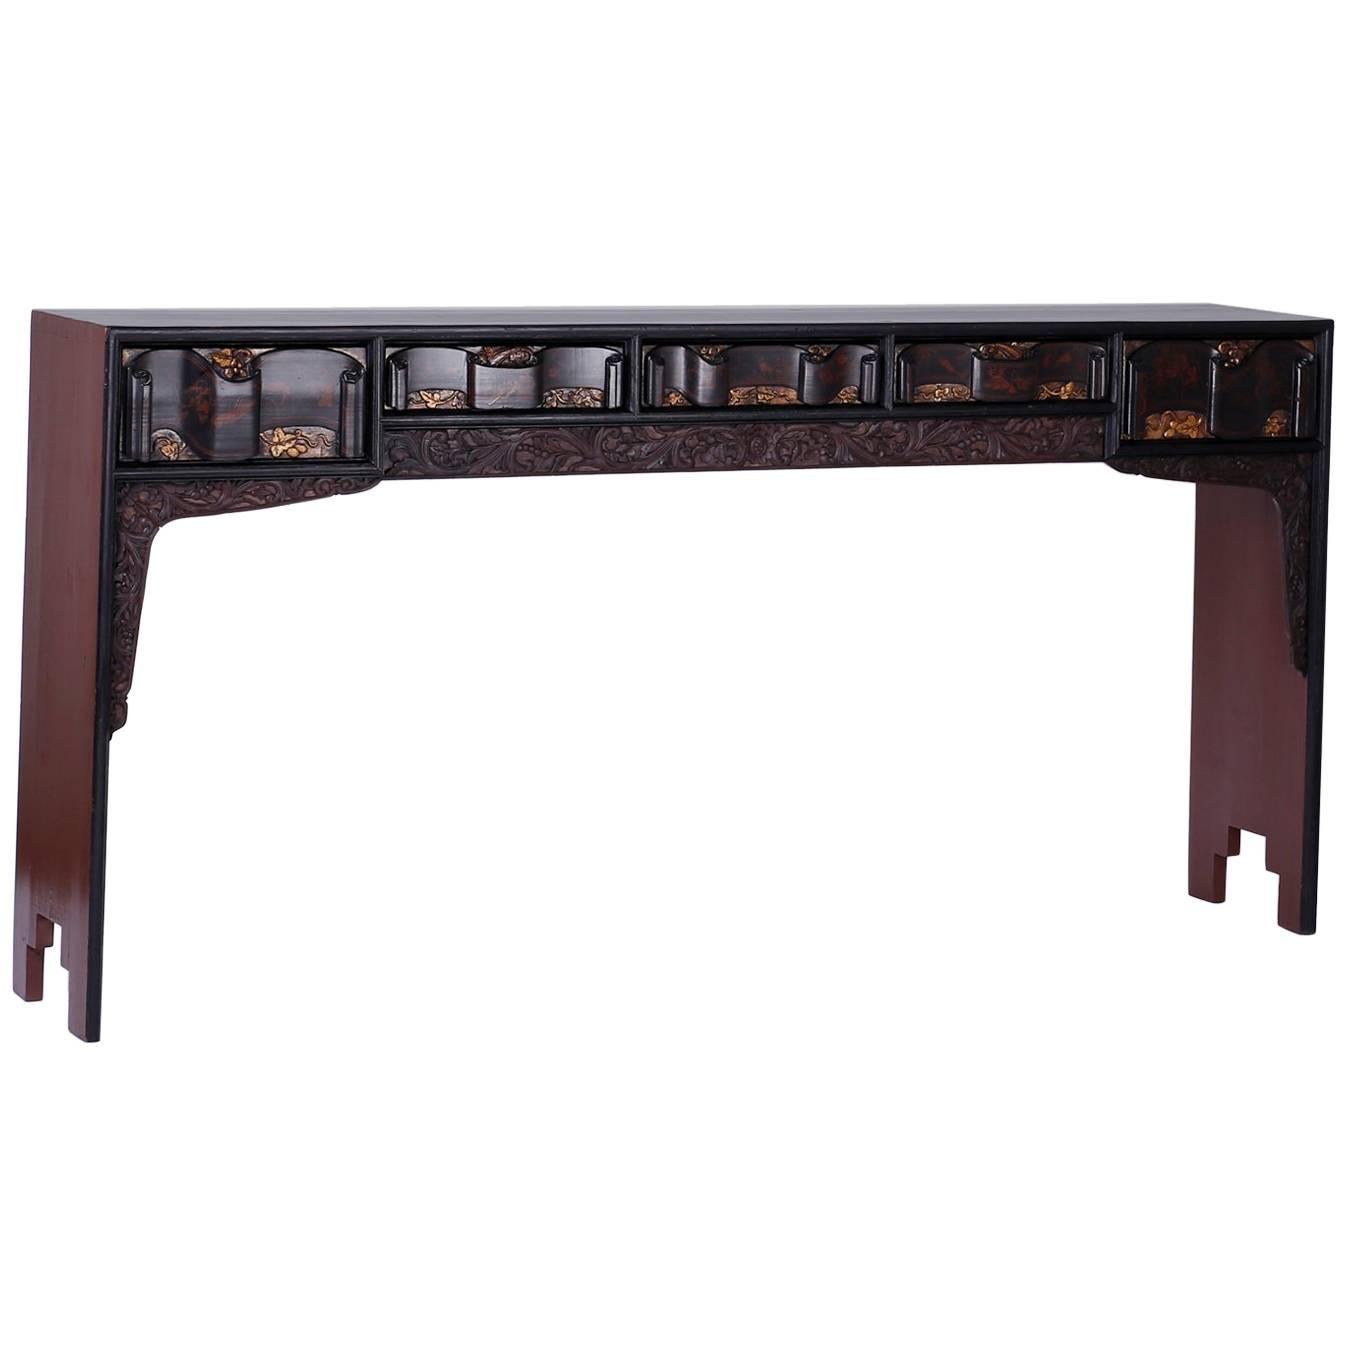 Table console ou table d'autel à cinq tiroirs peinte de style chinoiseries